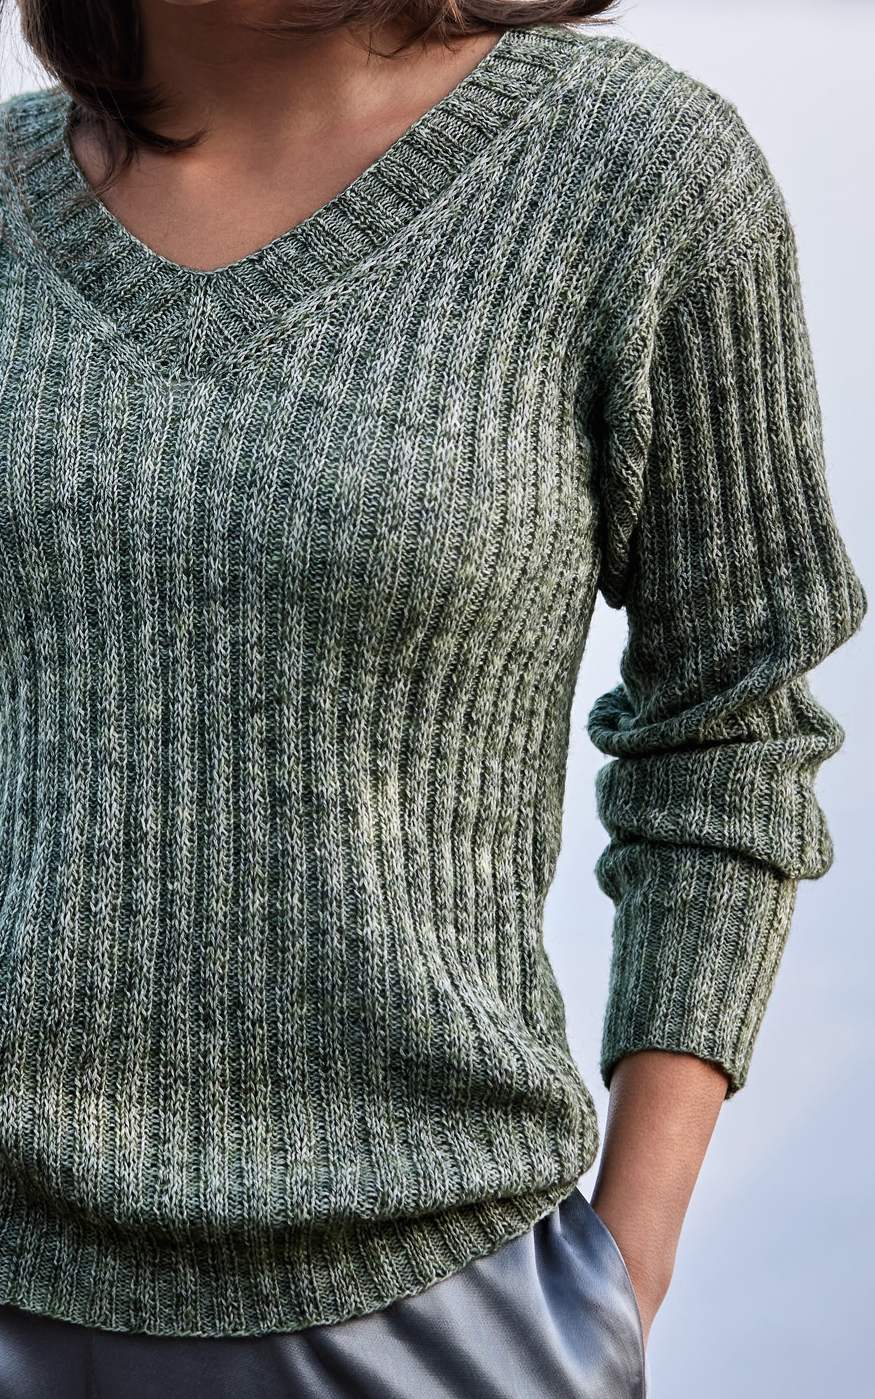 LANA GROSSA Strickset Pullover mit V-Ausschnitt und Rippenmuster - Strickset